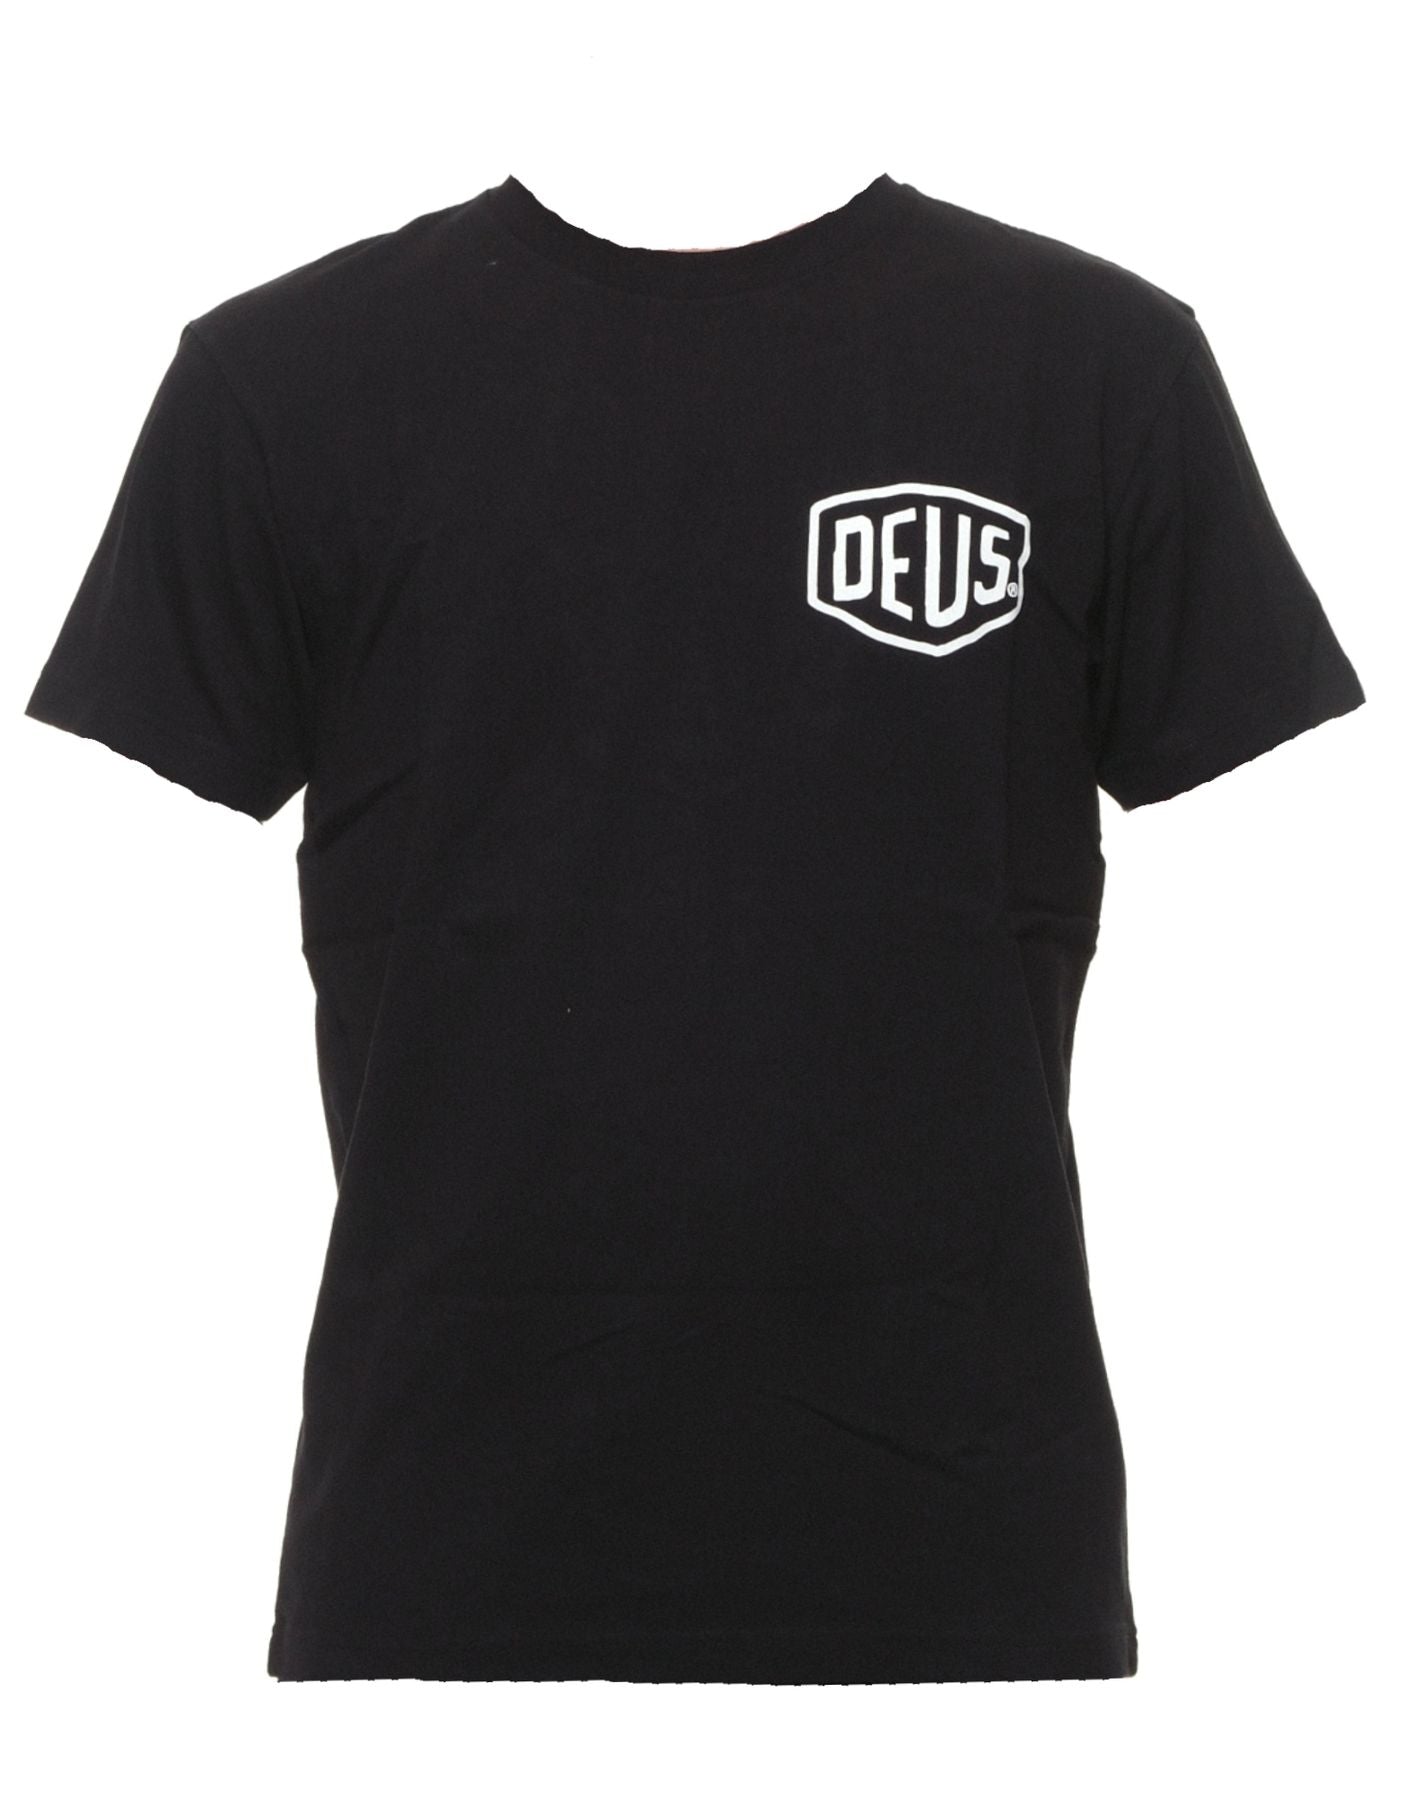 T-shirt pour l'homme dmw91808g berlin noir Deus Ex Machina